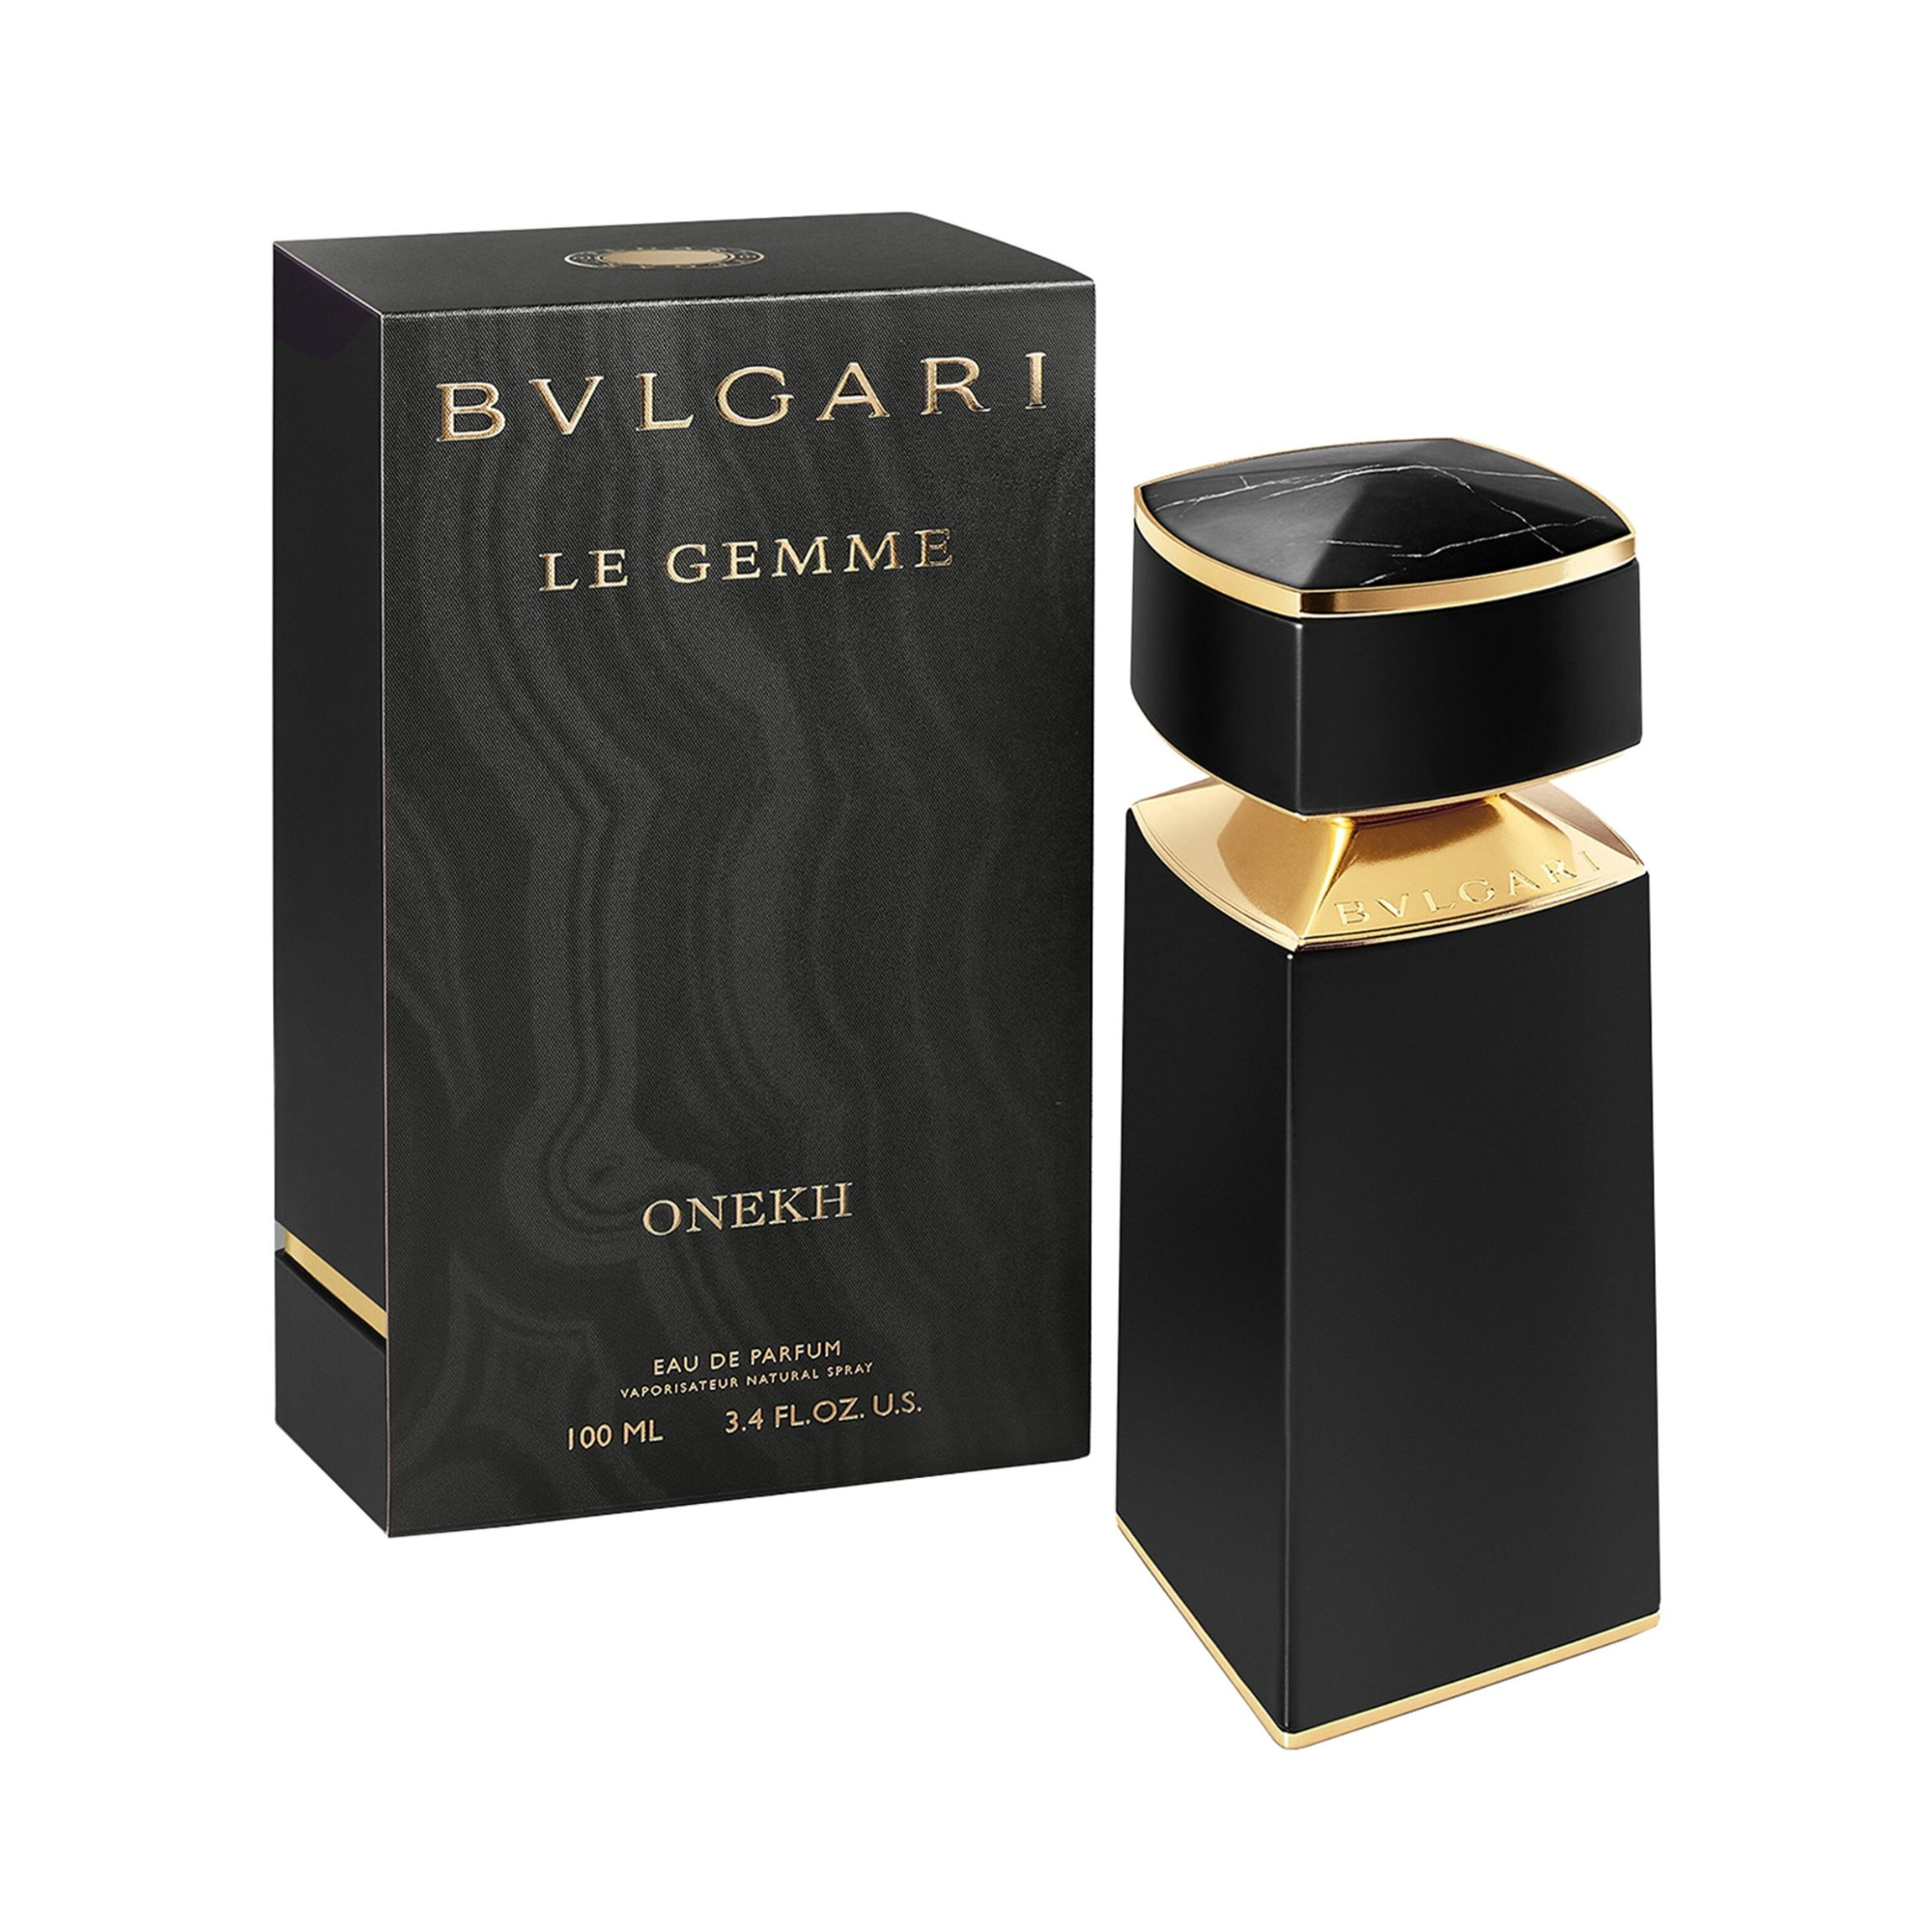 Bvlgari Le Gemme Onekh Eau de Parfum for men